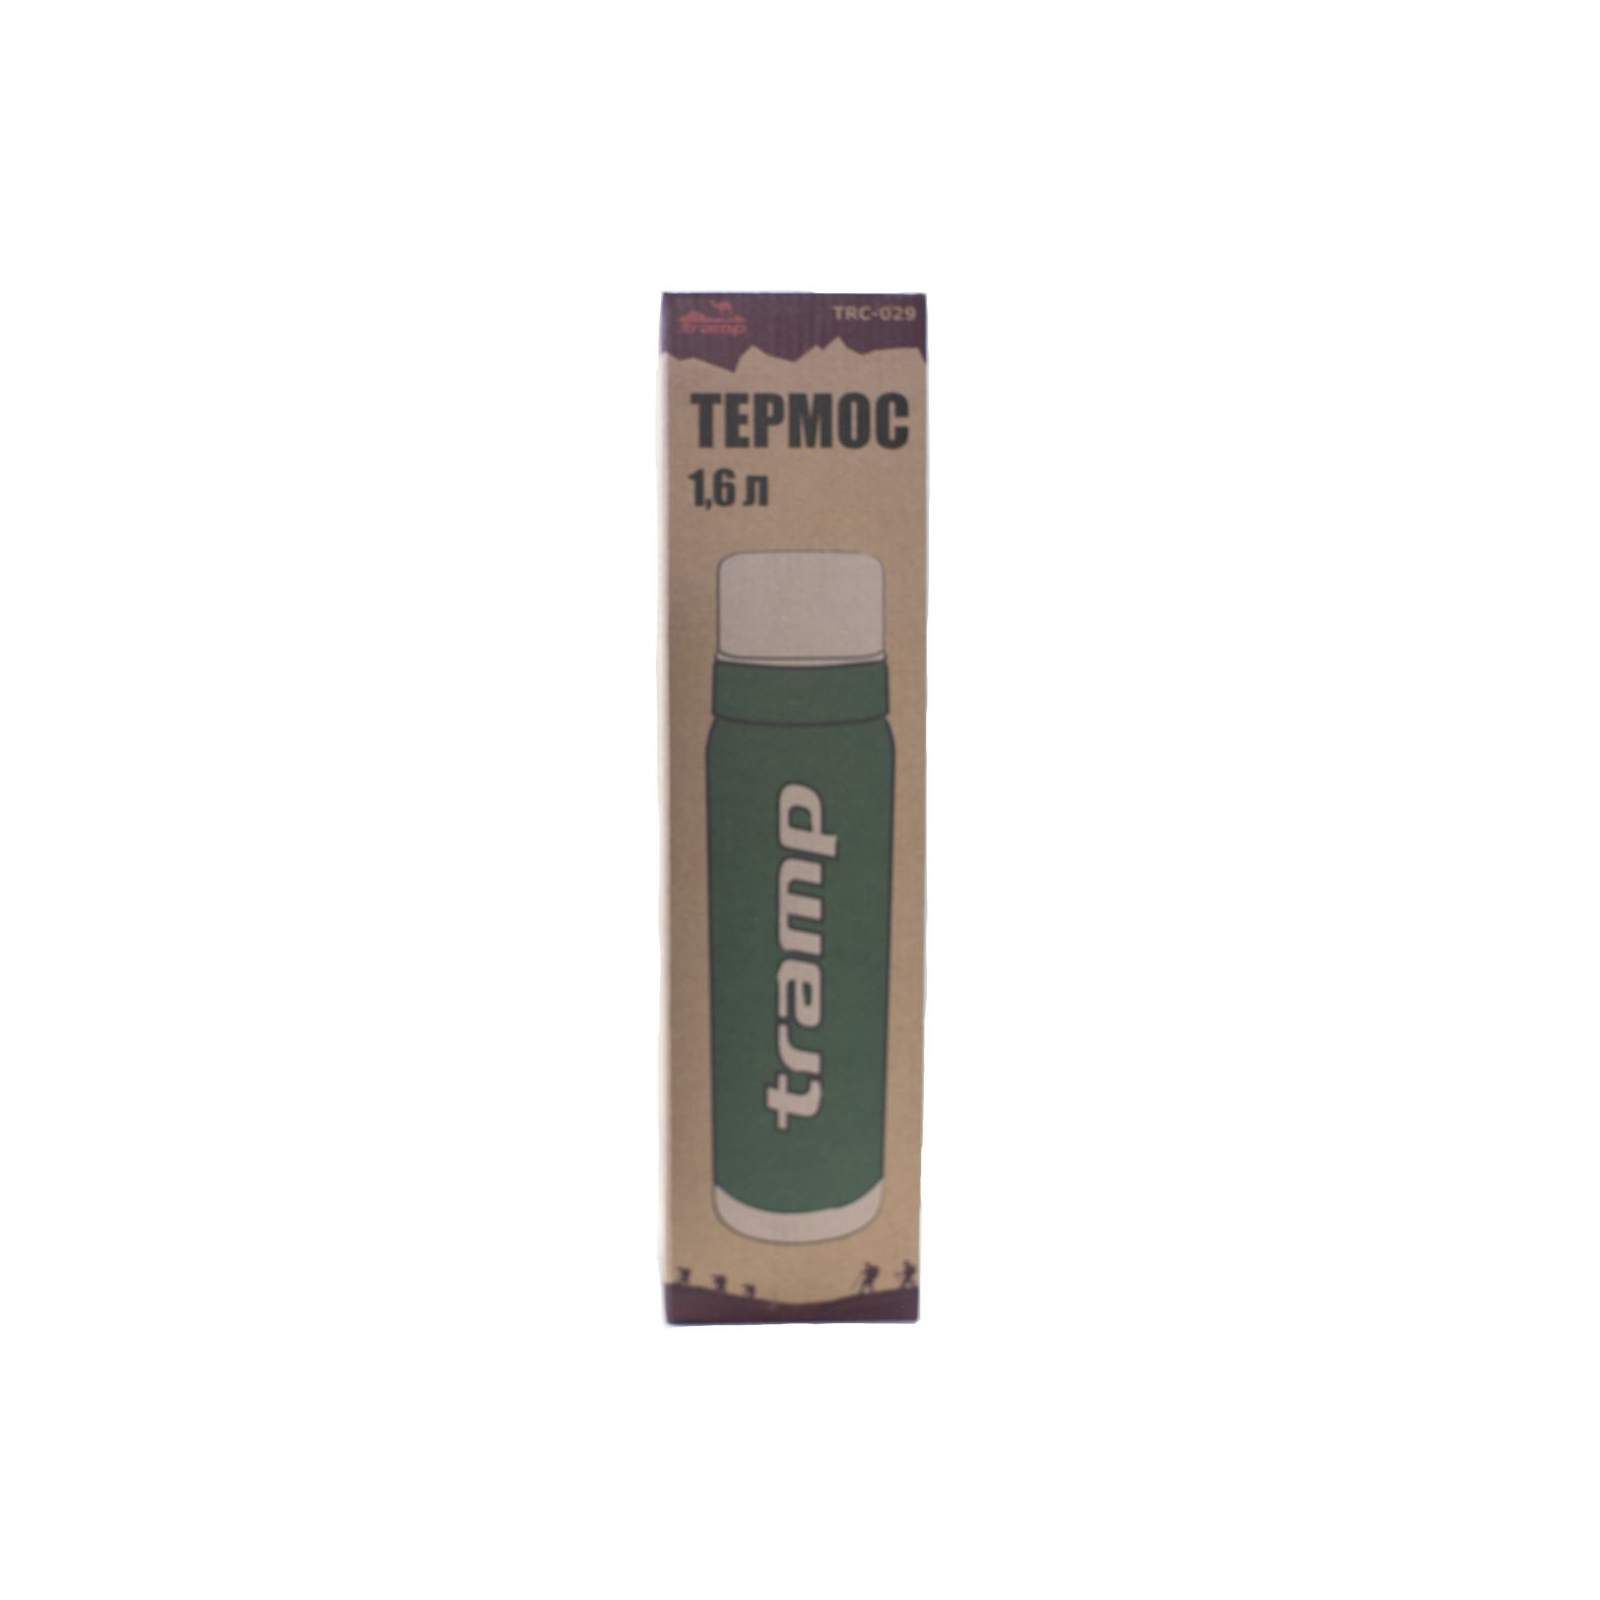 Термос Tramp 0,5 л оливковый (TRC-030-olive-old) зображення 3